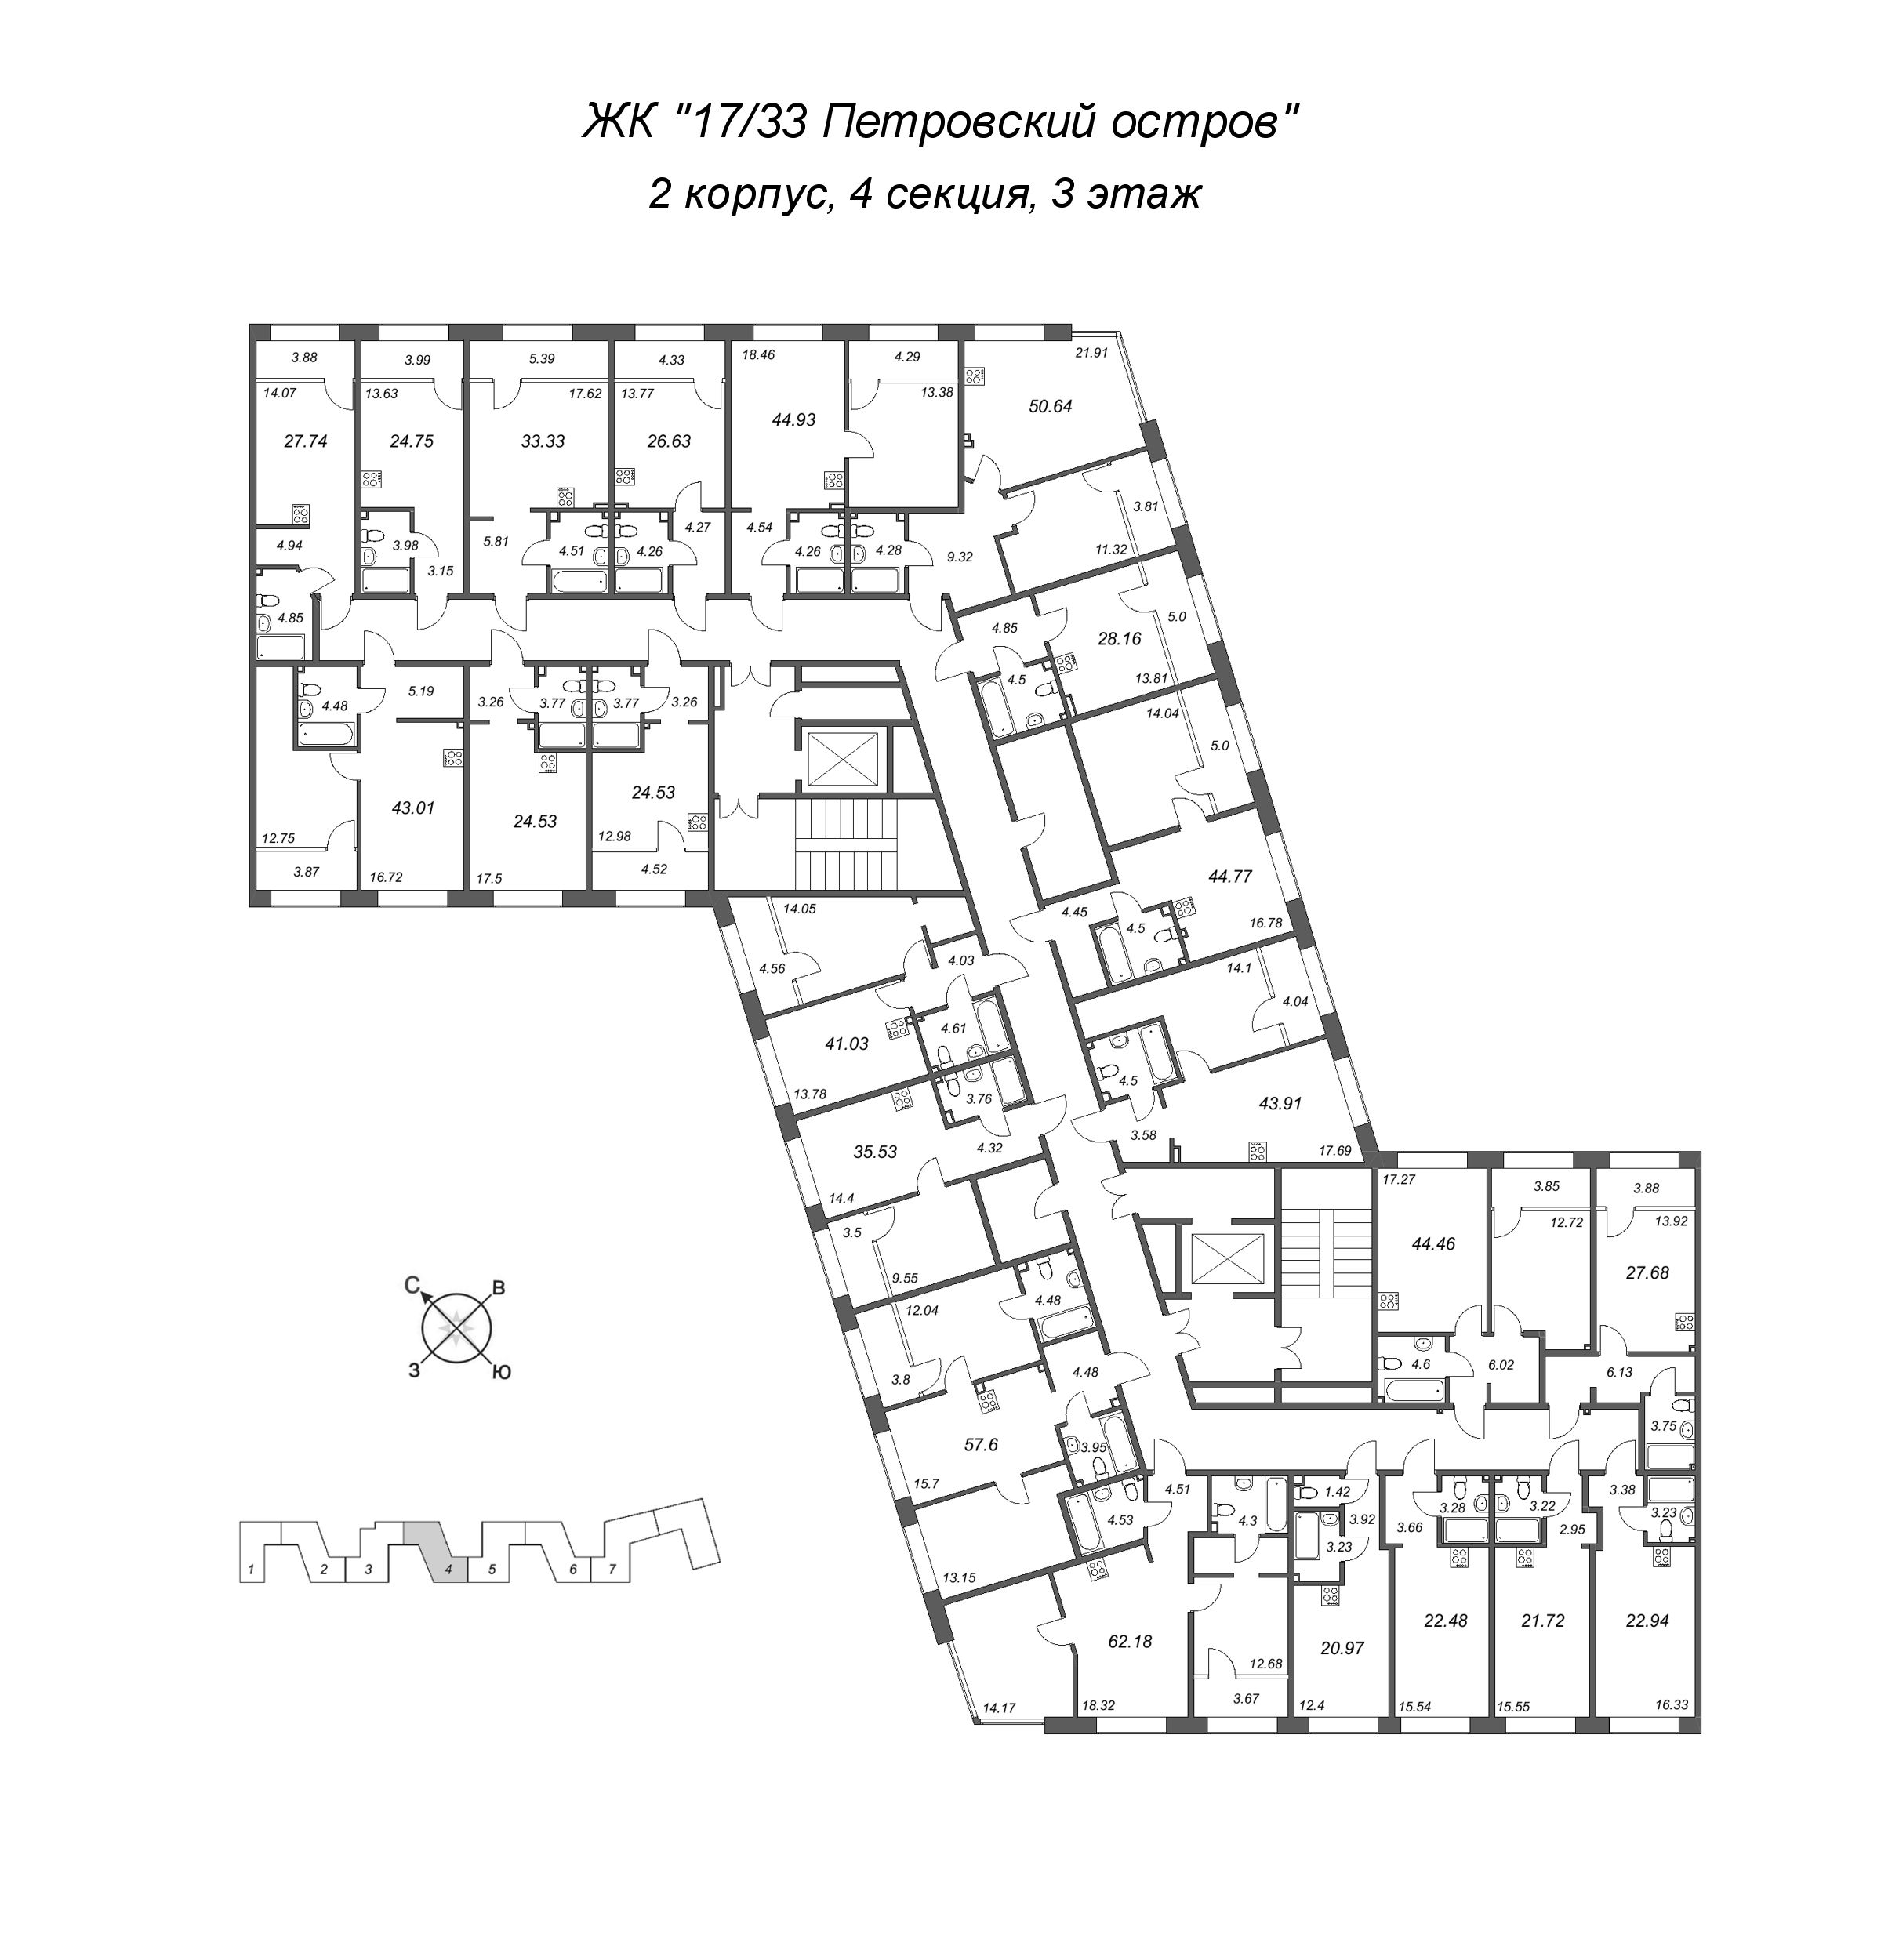 2-комнатная (Евро) квартира, 43.91 м² в ЖК "17/33 Петровский остров" - планировка этажа